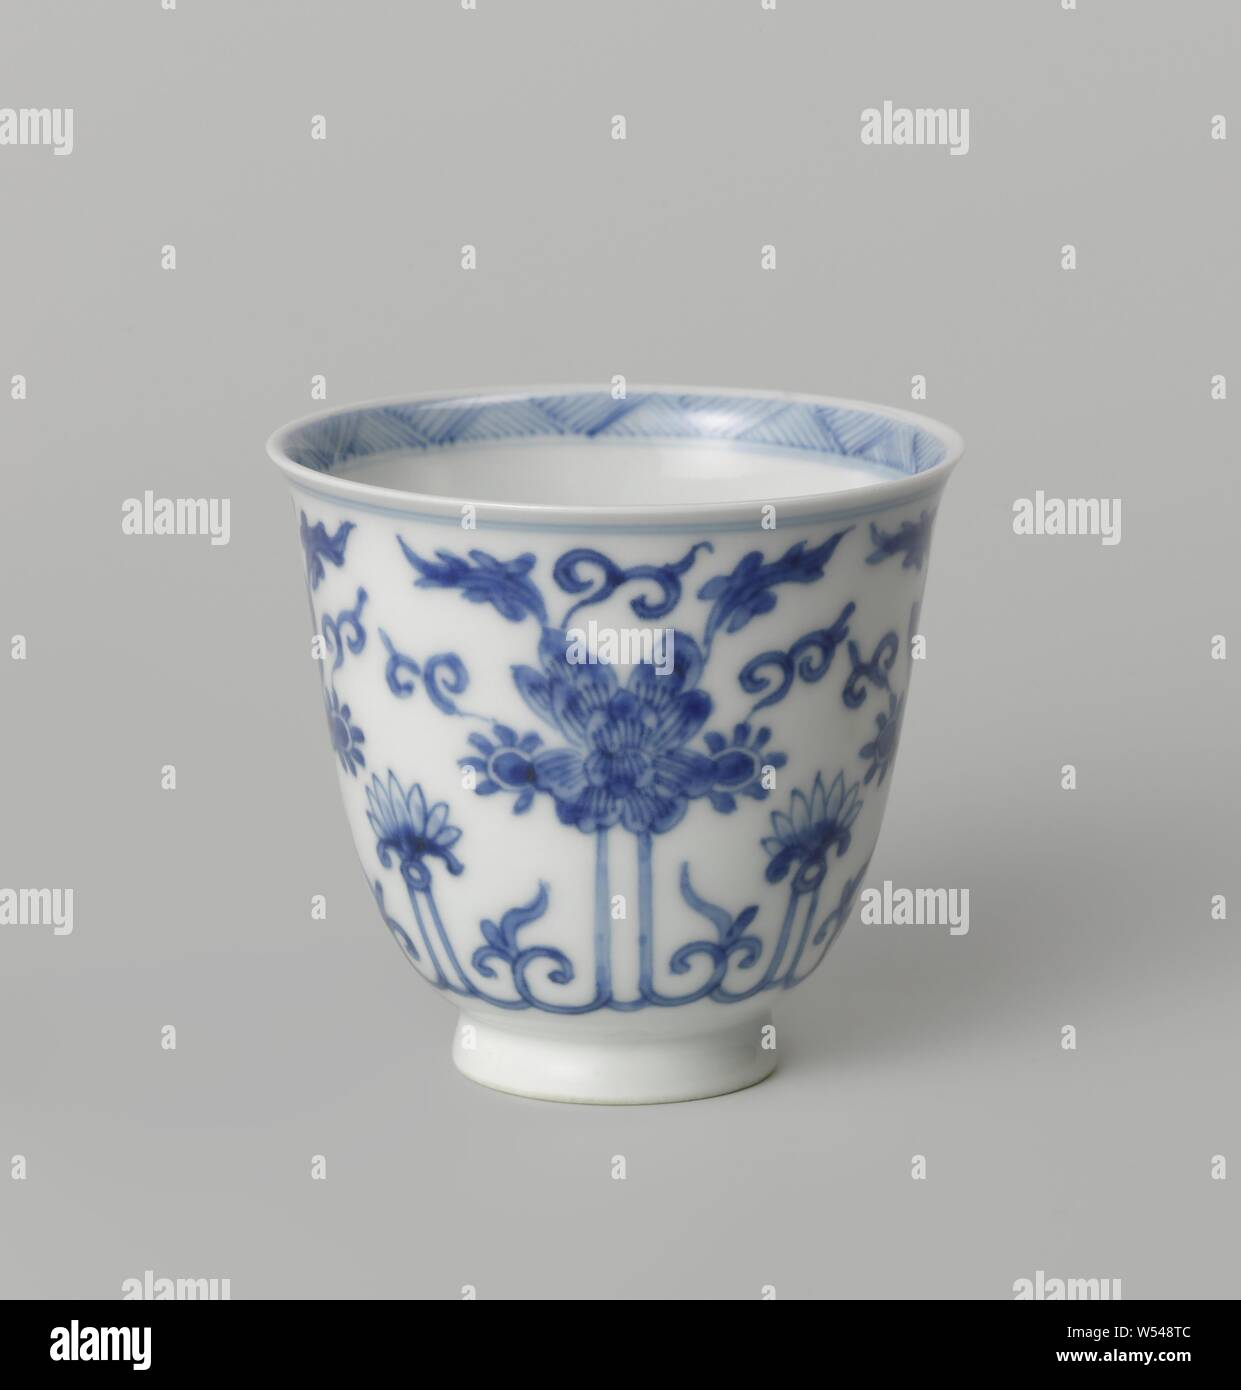 Coupe en forme de cloche avec lotus morte, tasse de porcelaine en forme de cloche, peint en bleu sous glaçure. Sur le mur extérieur d'un lotus stylisé fortement vigne continue. Le fond avec une branche stylisée dans un double cercle. Un groupe avec l'éclosion sur le bord intérieur. Blauw-wit, fleurs, ornement, anonyme, la Chine, l'c. 1700 - c. 1724, Qing Dynasty, Kangxi (1644-1912) / (1662-1722) Période / Yongzheng-période (1723-1735), Porcelaine, glaçure (matériel), le cobalt (minéral), la vitrification, H 6,8 cm d 7,5 cm Banque D'Images